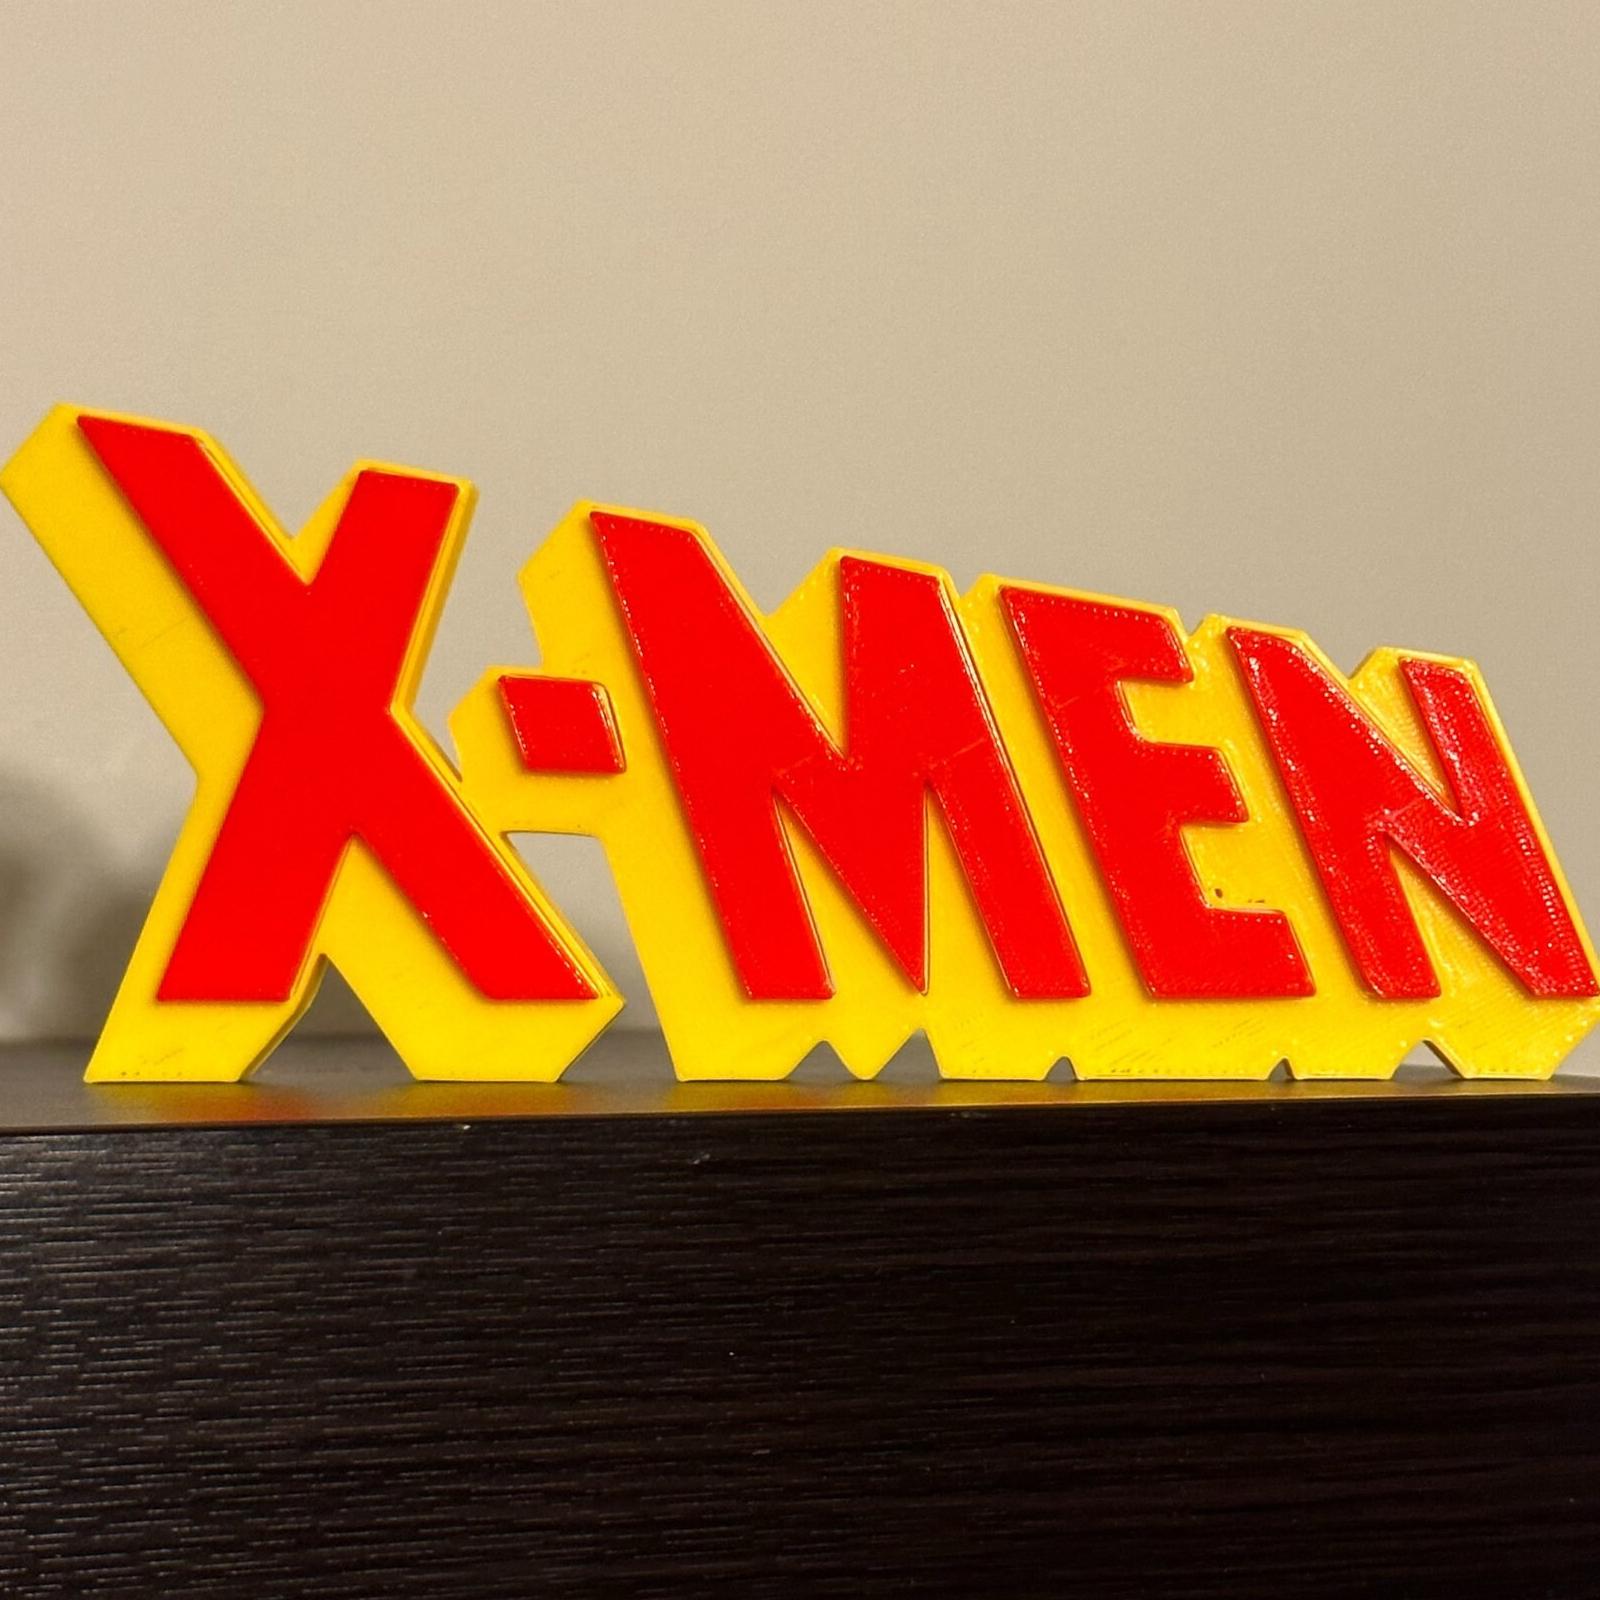 X-Men Universe